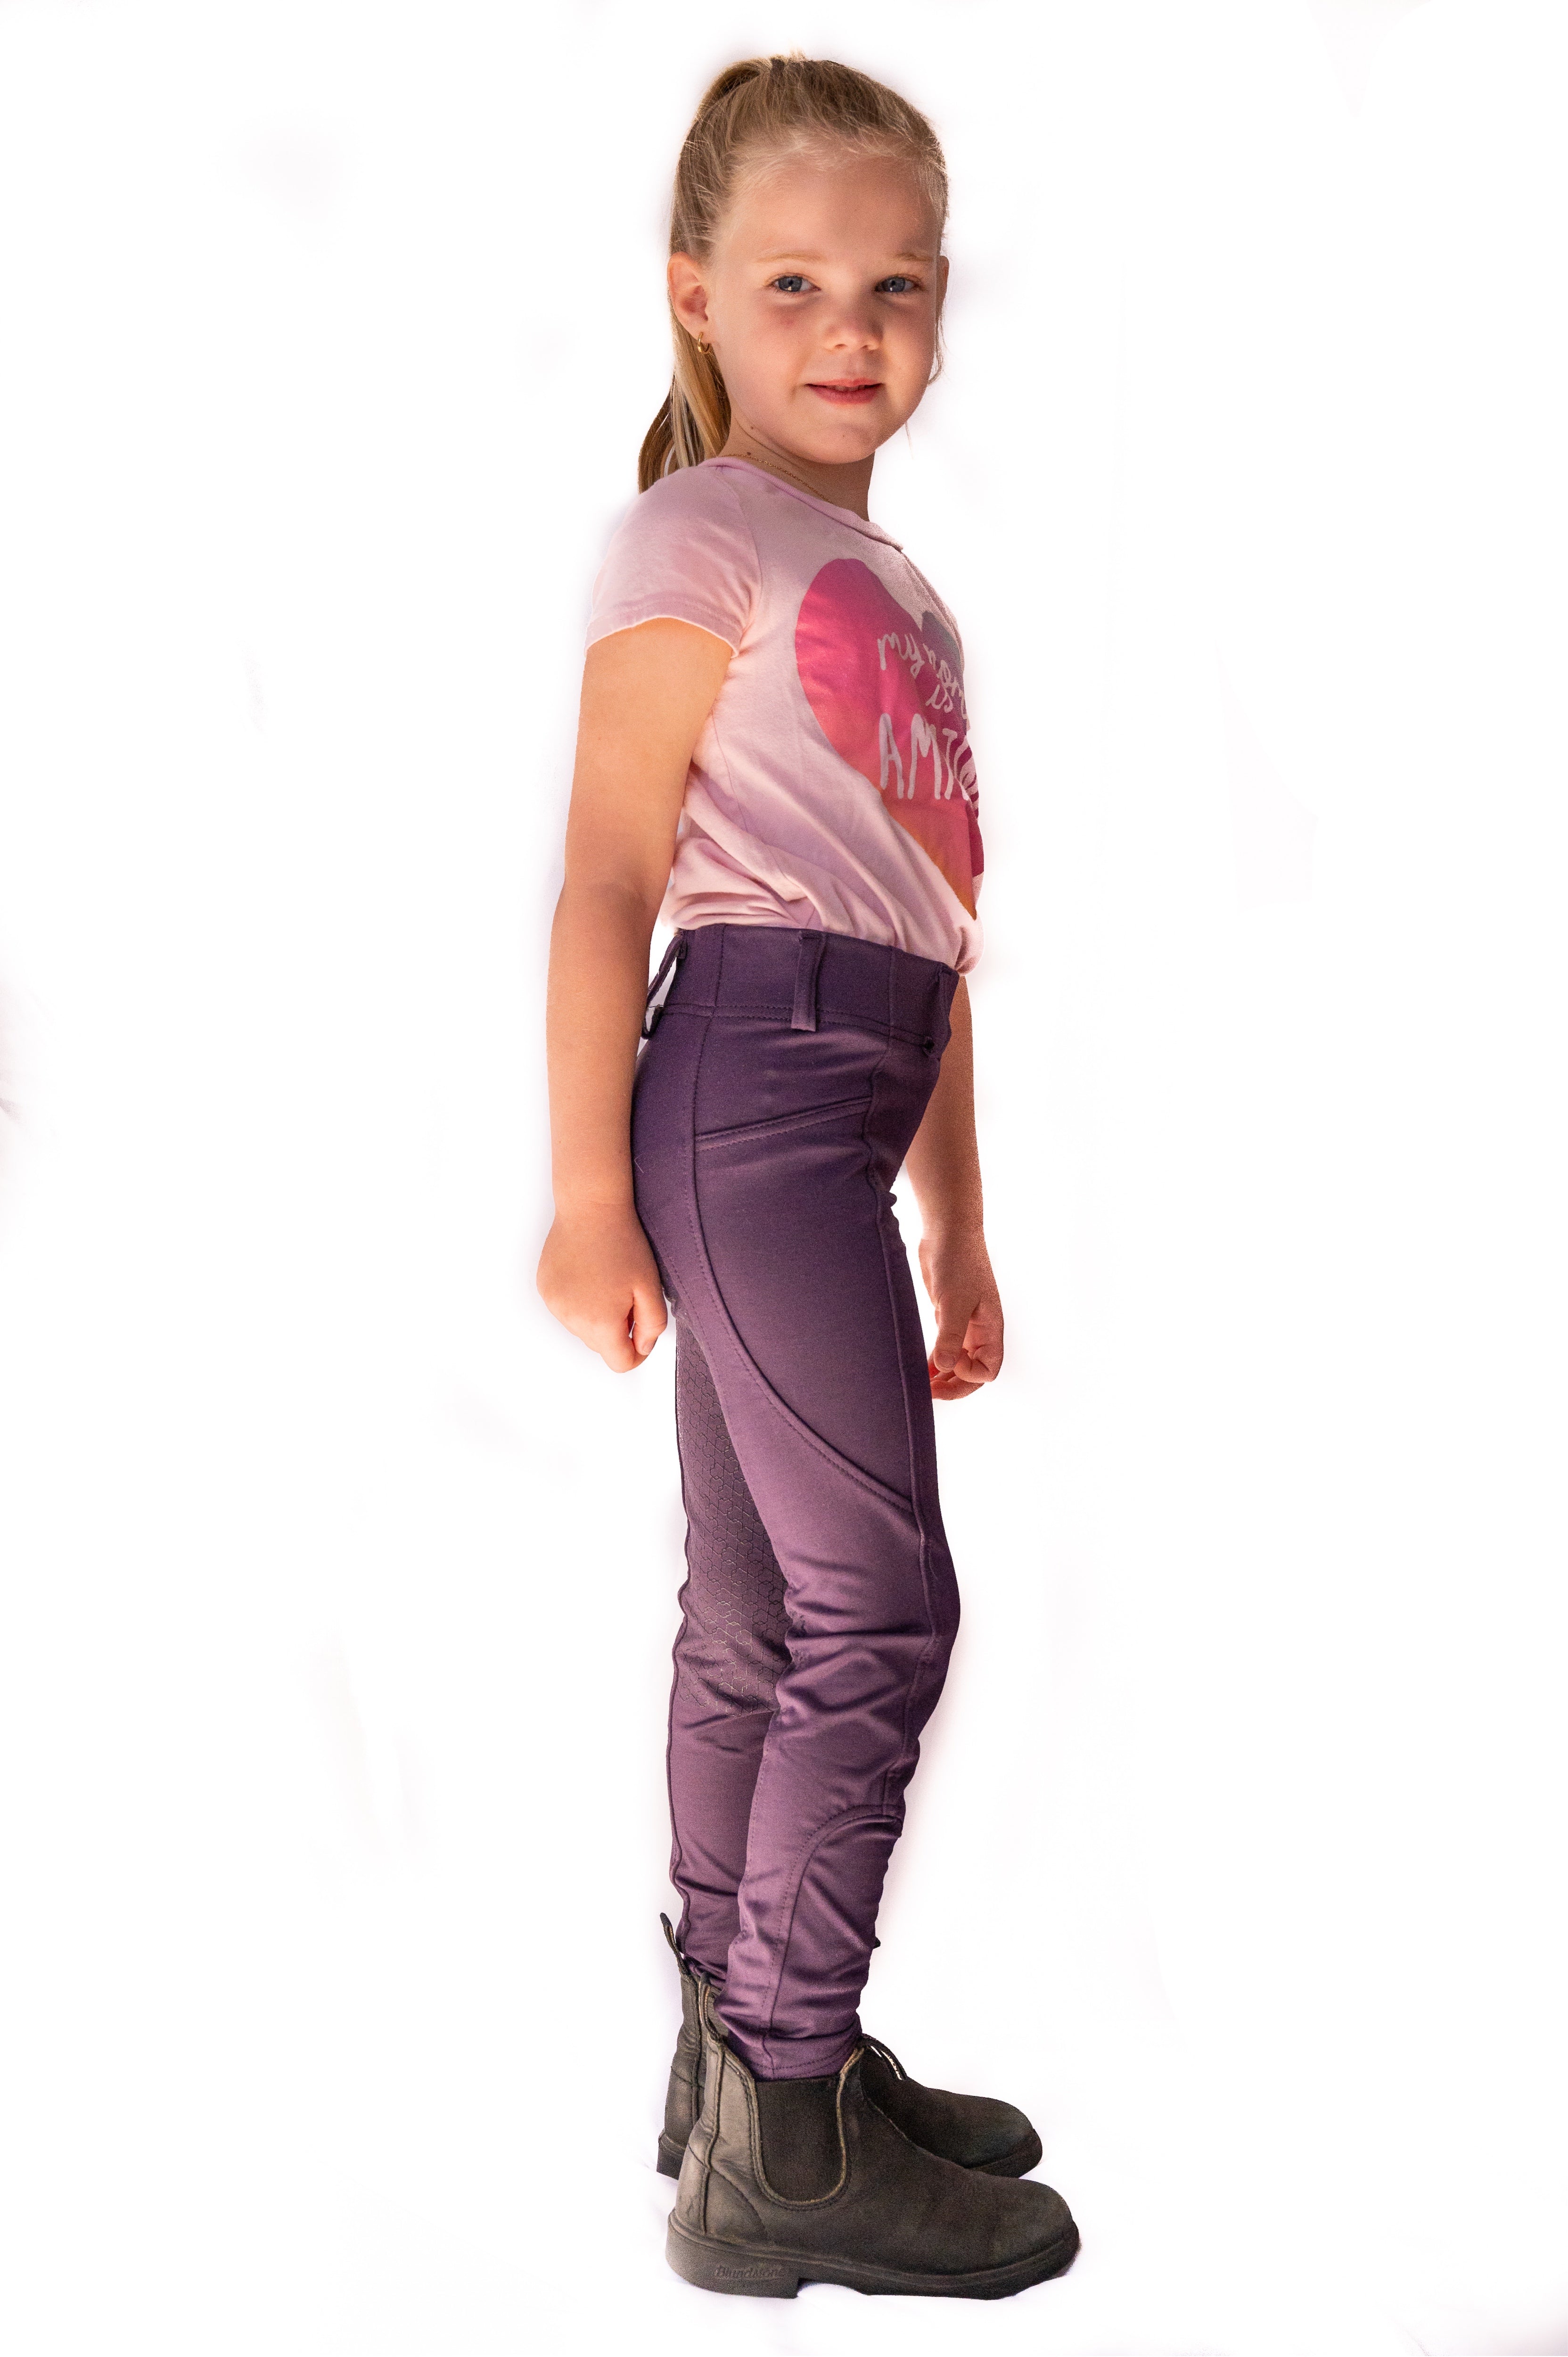 Basic fleece leggings purple for children